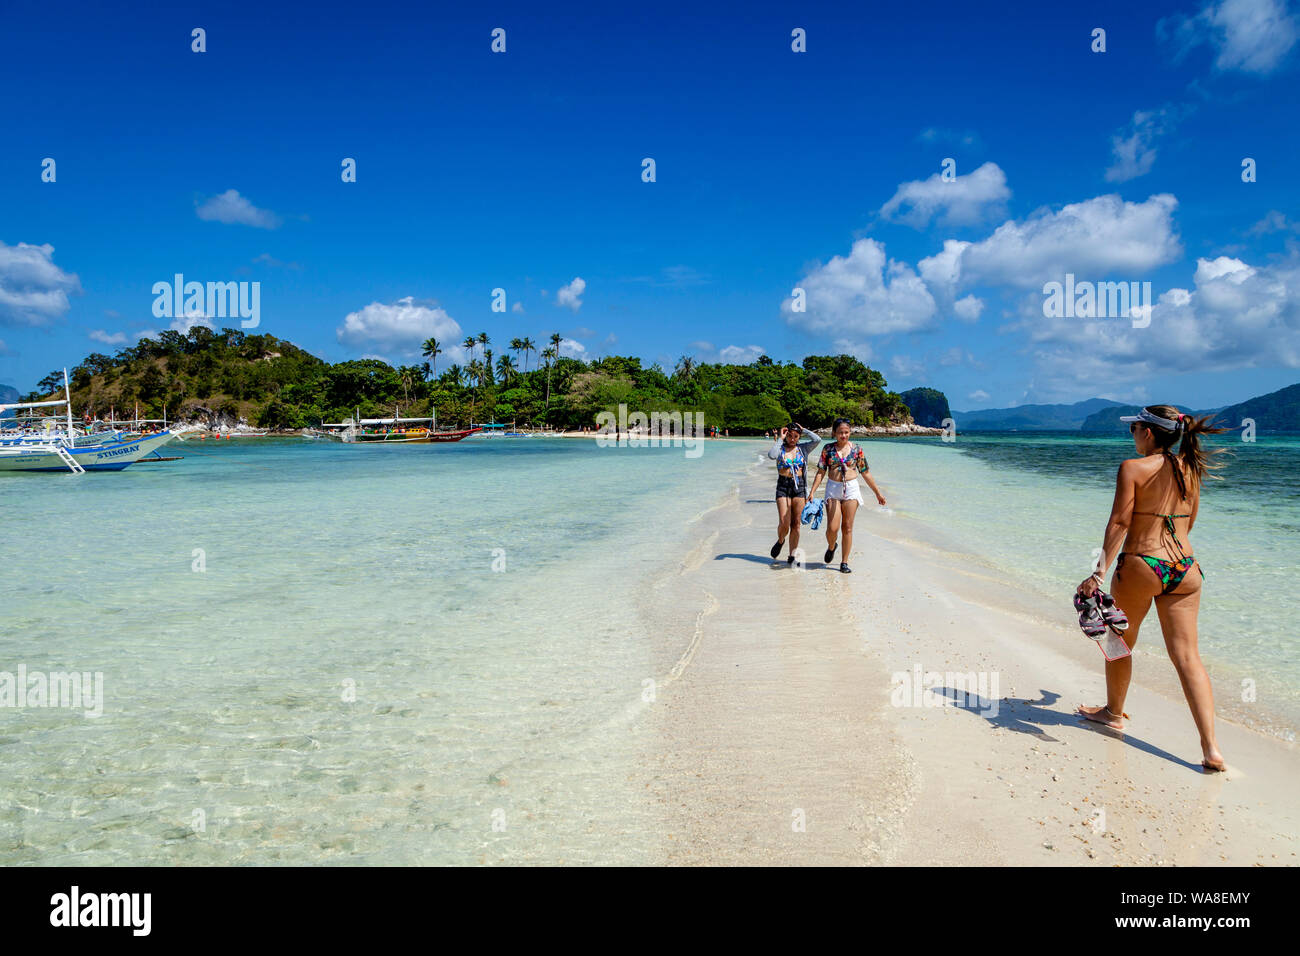 Les touristes marcher sur un banc de sable à marée basse, l'île aux Serpents, El Nido, Palawan, Philippines Banque D'Images